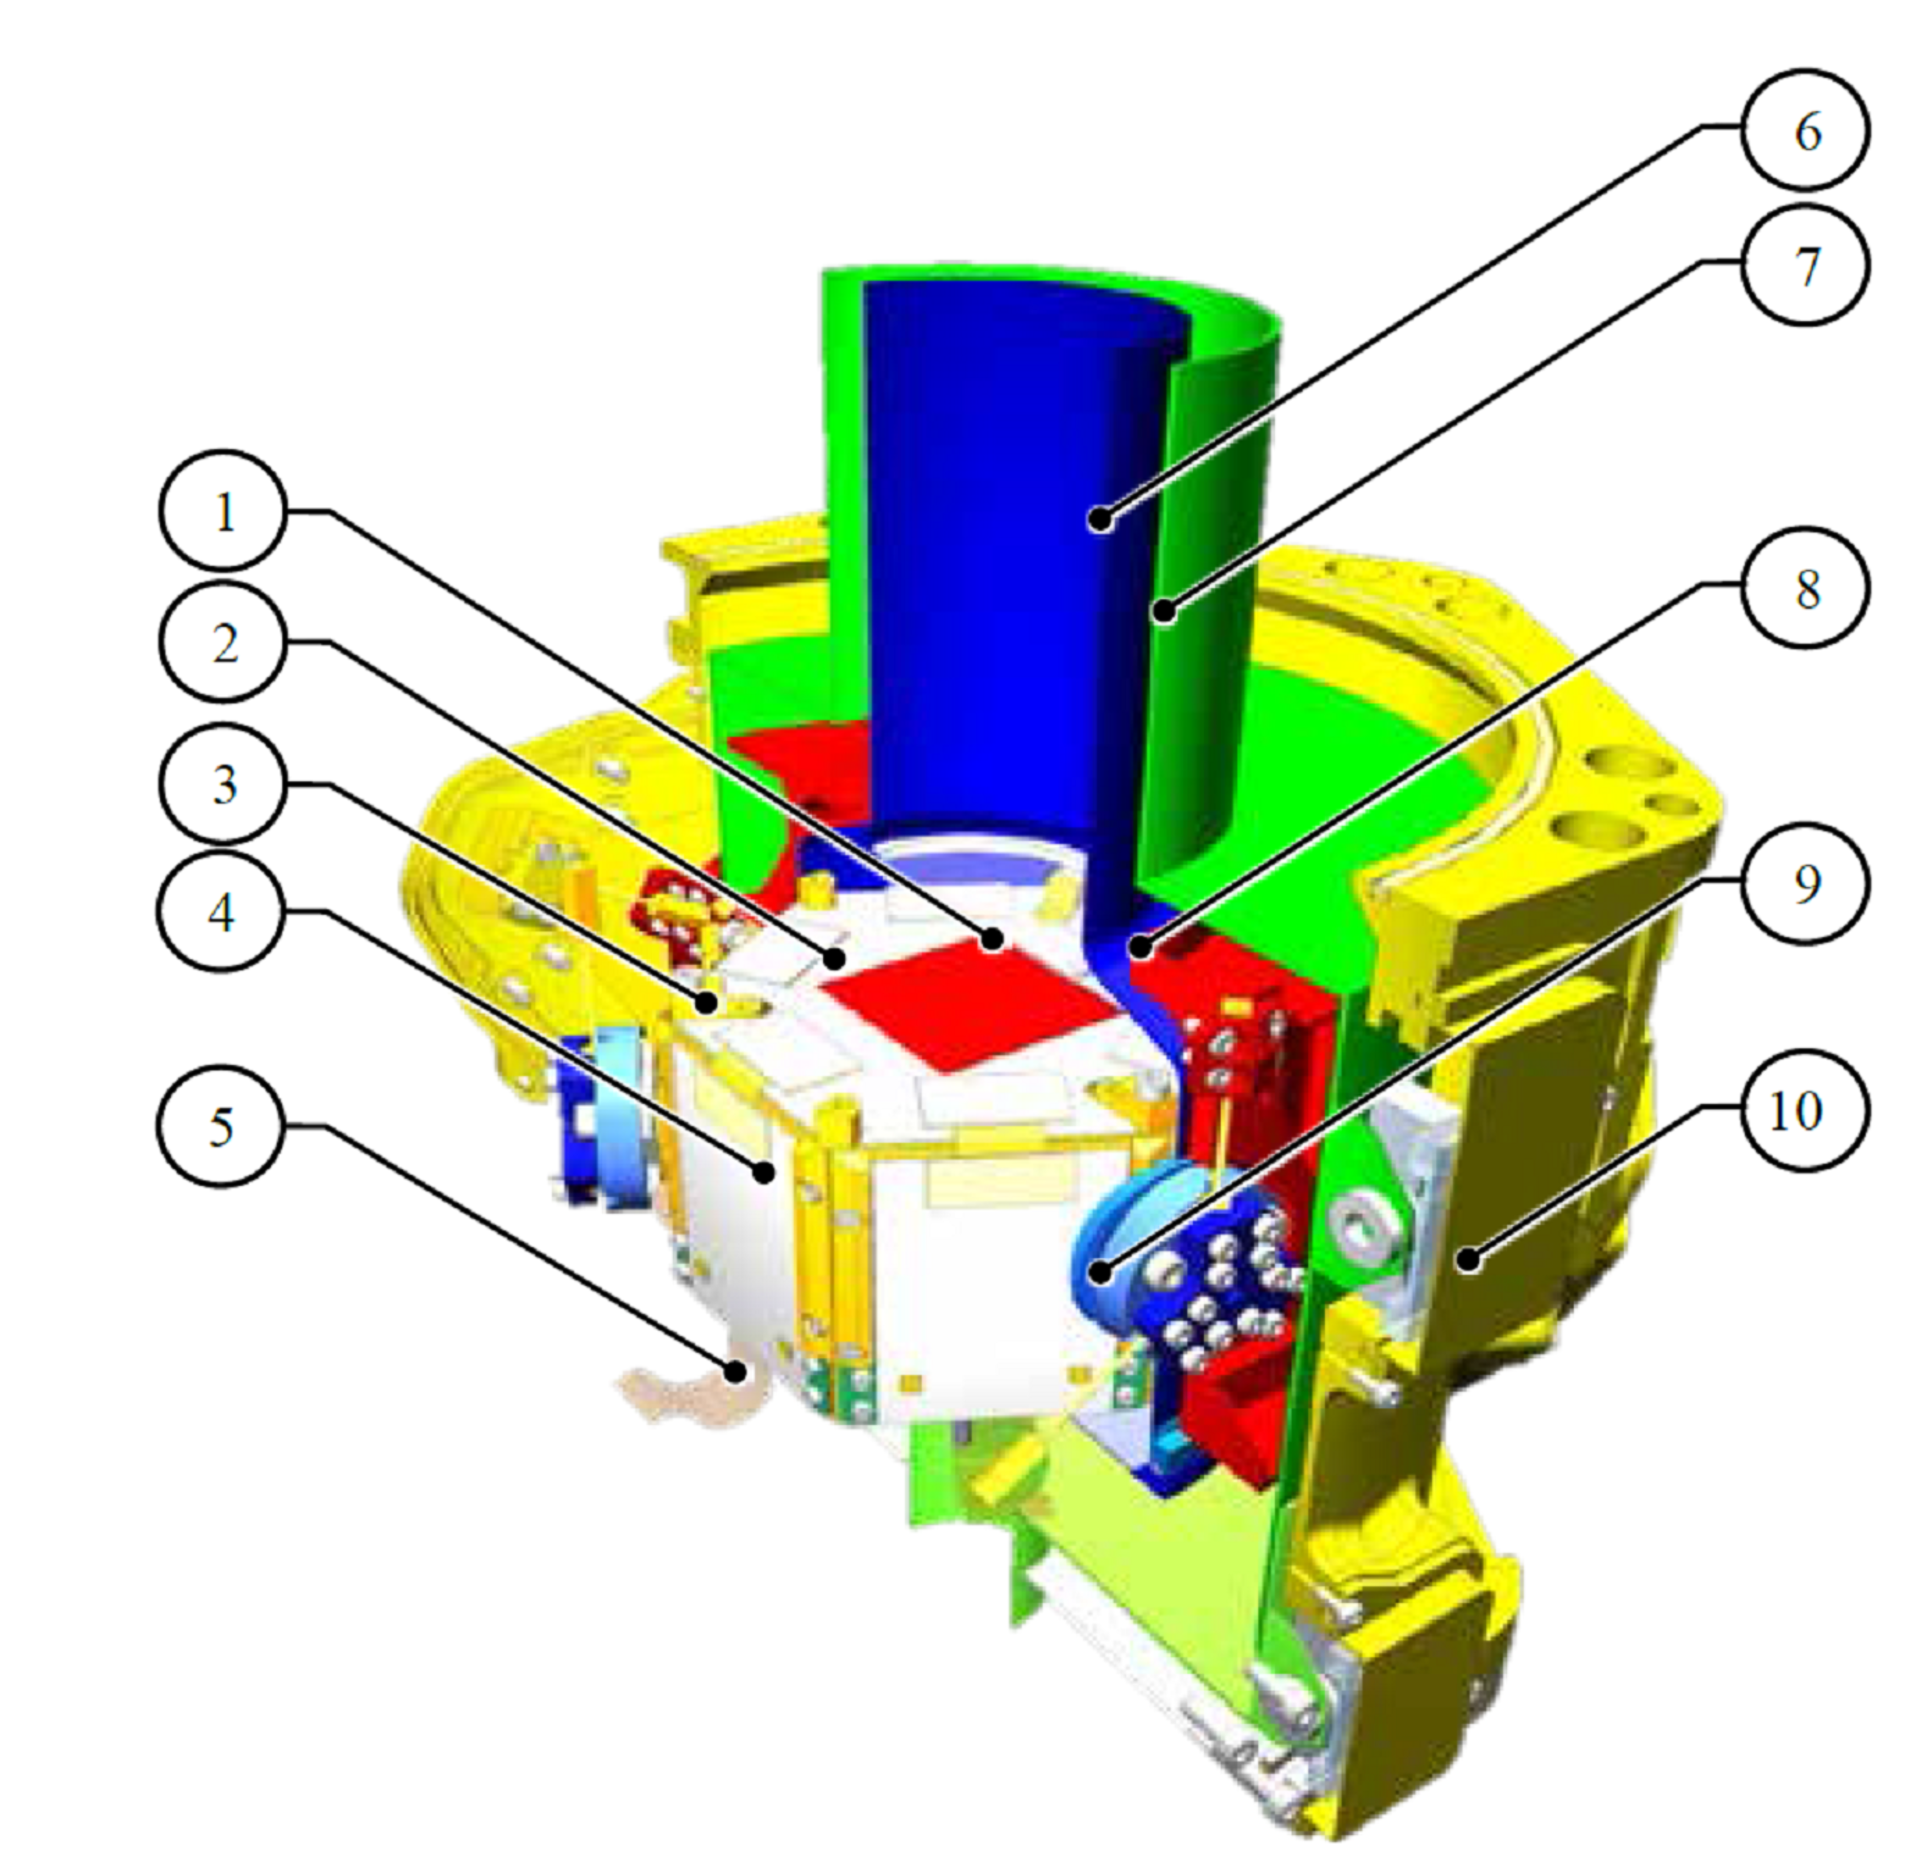 Conceptual design of TES focal plane